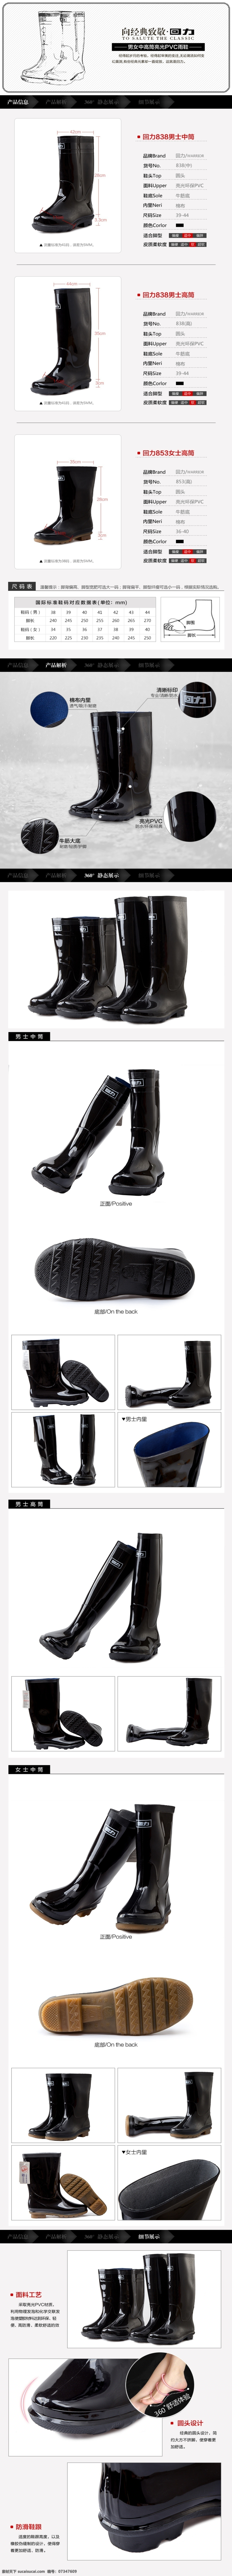 回力 胶鞋 简约 黑白 详情 页 鞋子详情 电商设计 产品信息标头